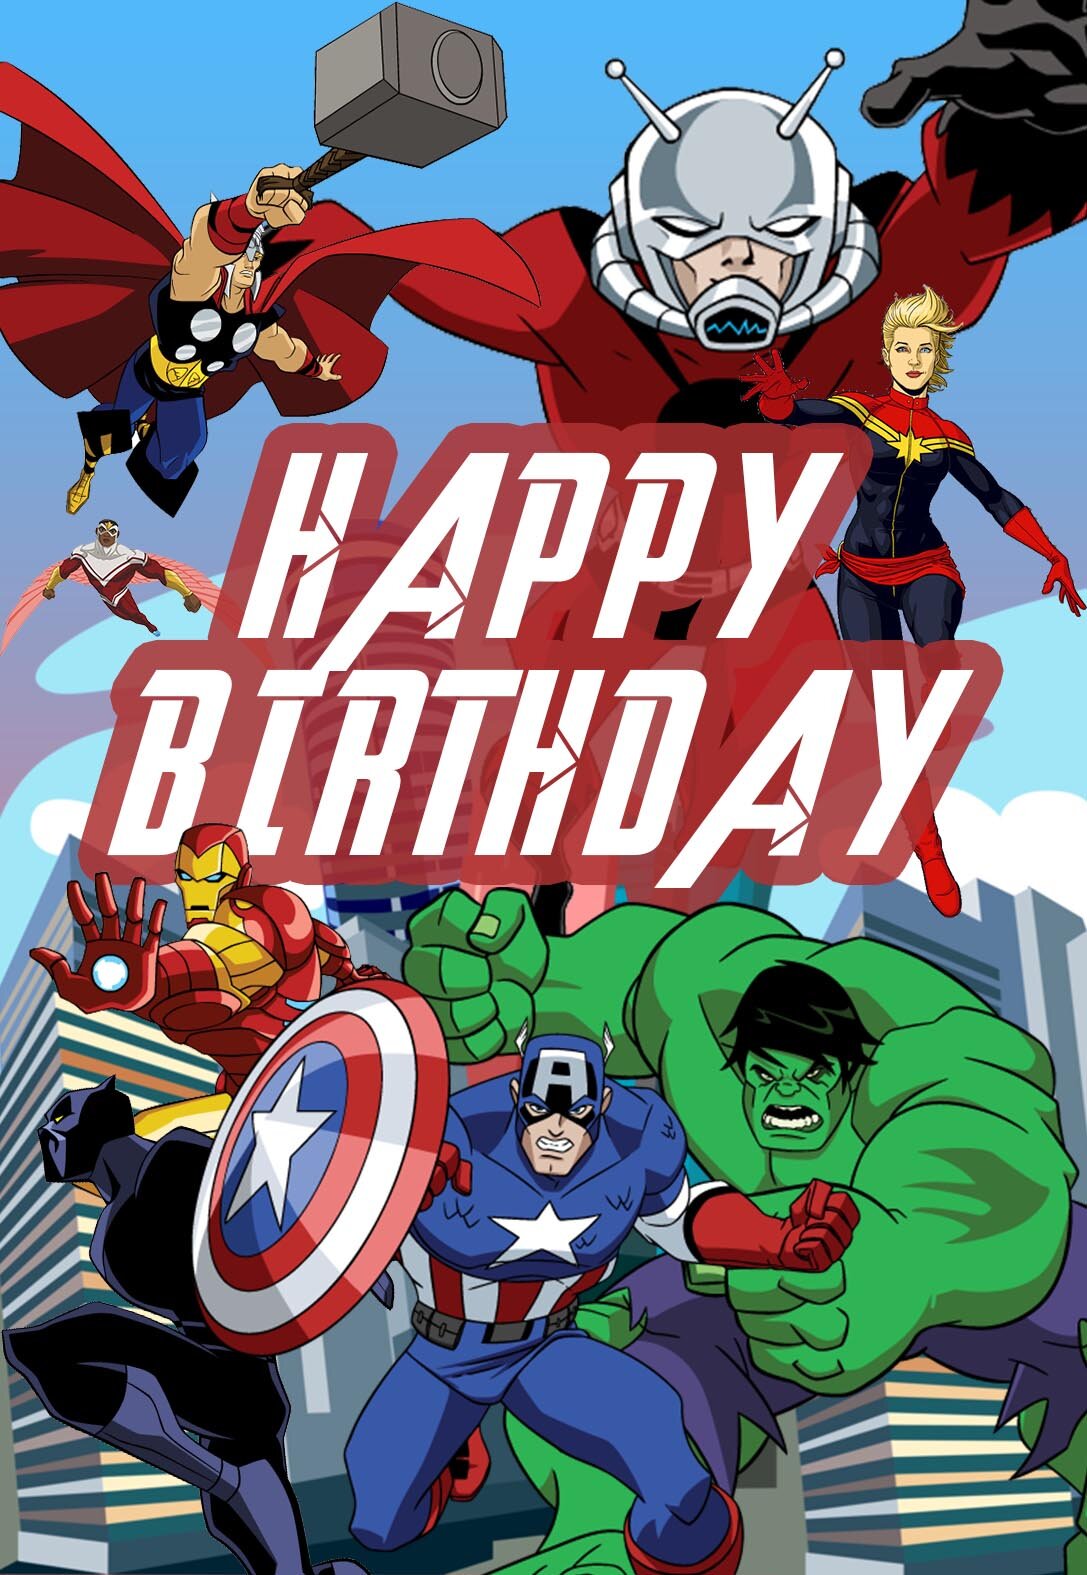 Free Printable Superhero Birthday Cards